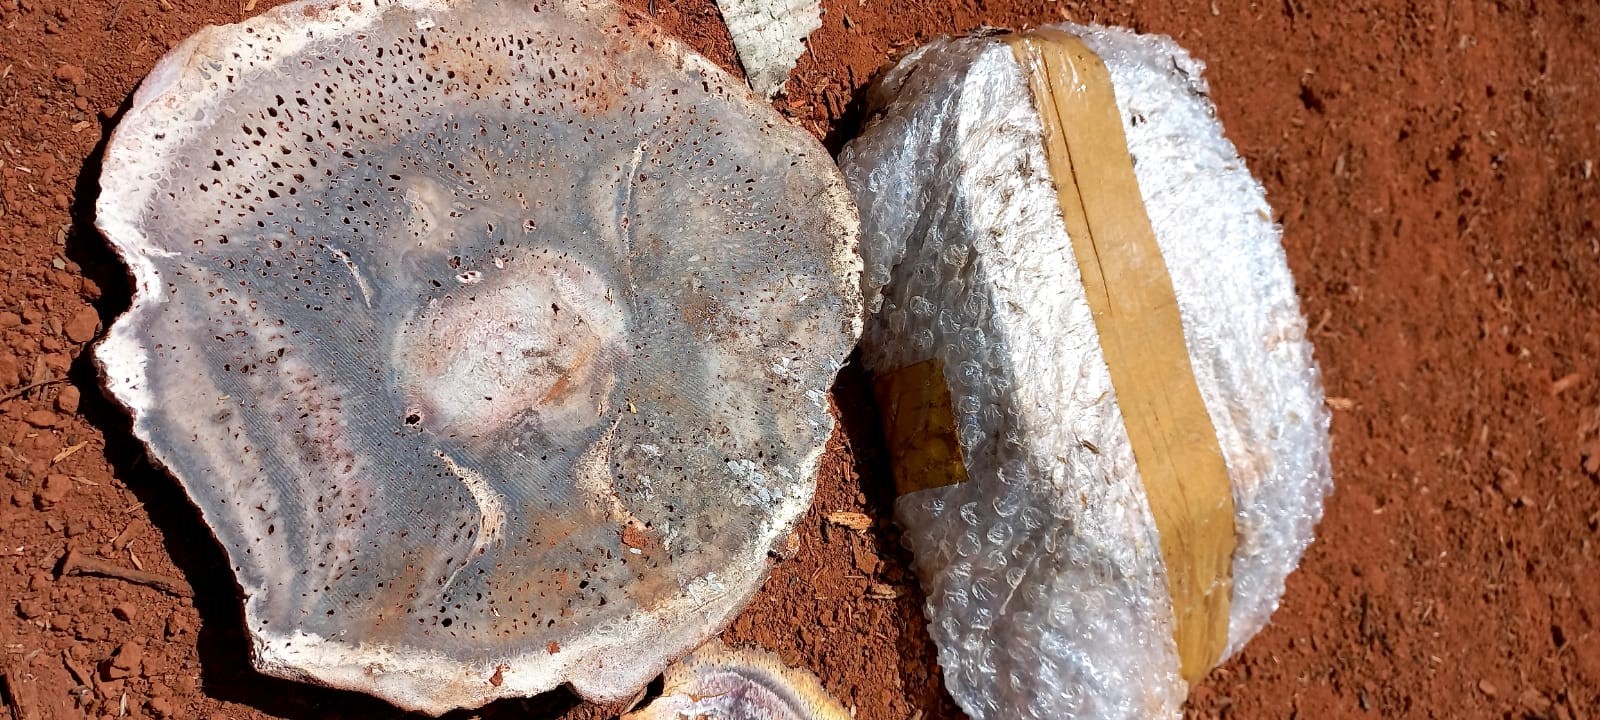 Comitiva do Tocantins avalia mais de 80 toneladas de fósseis na ABIN para repatriação